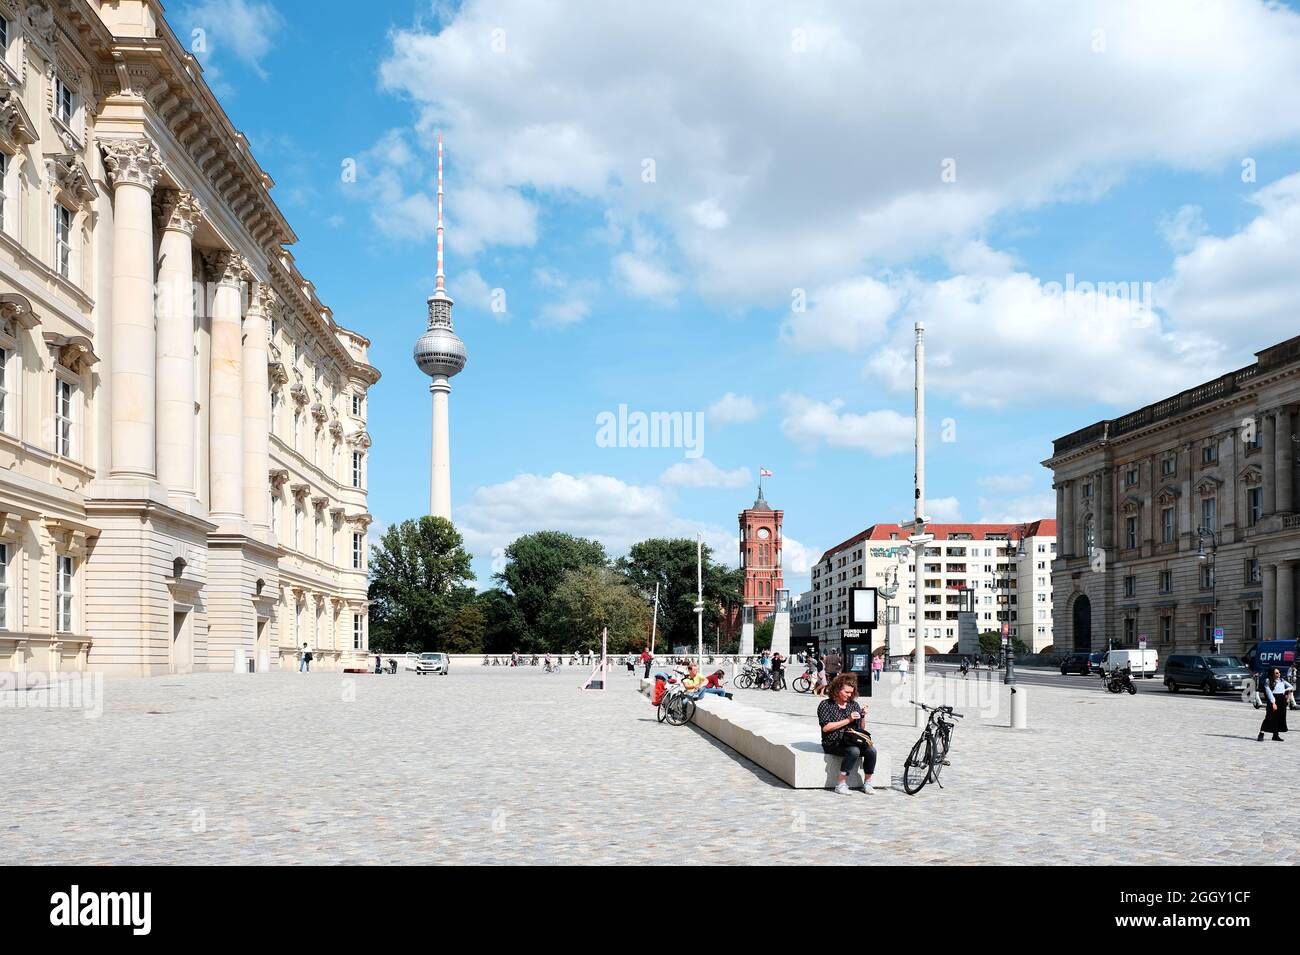 Berlín, Alemania, 24 de agosto de 2021, vista panorámica desde el Castillo de Berlín hacia Alexanderplatz con la Torre de TV, el Ayuntamiento Rojo y la Academia de Música Hanns Eisler Foto de stock